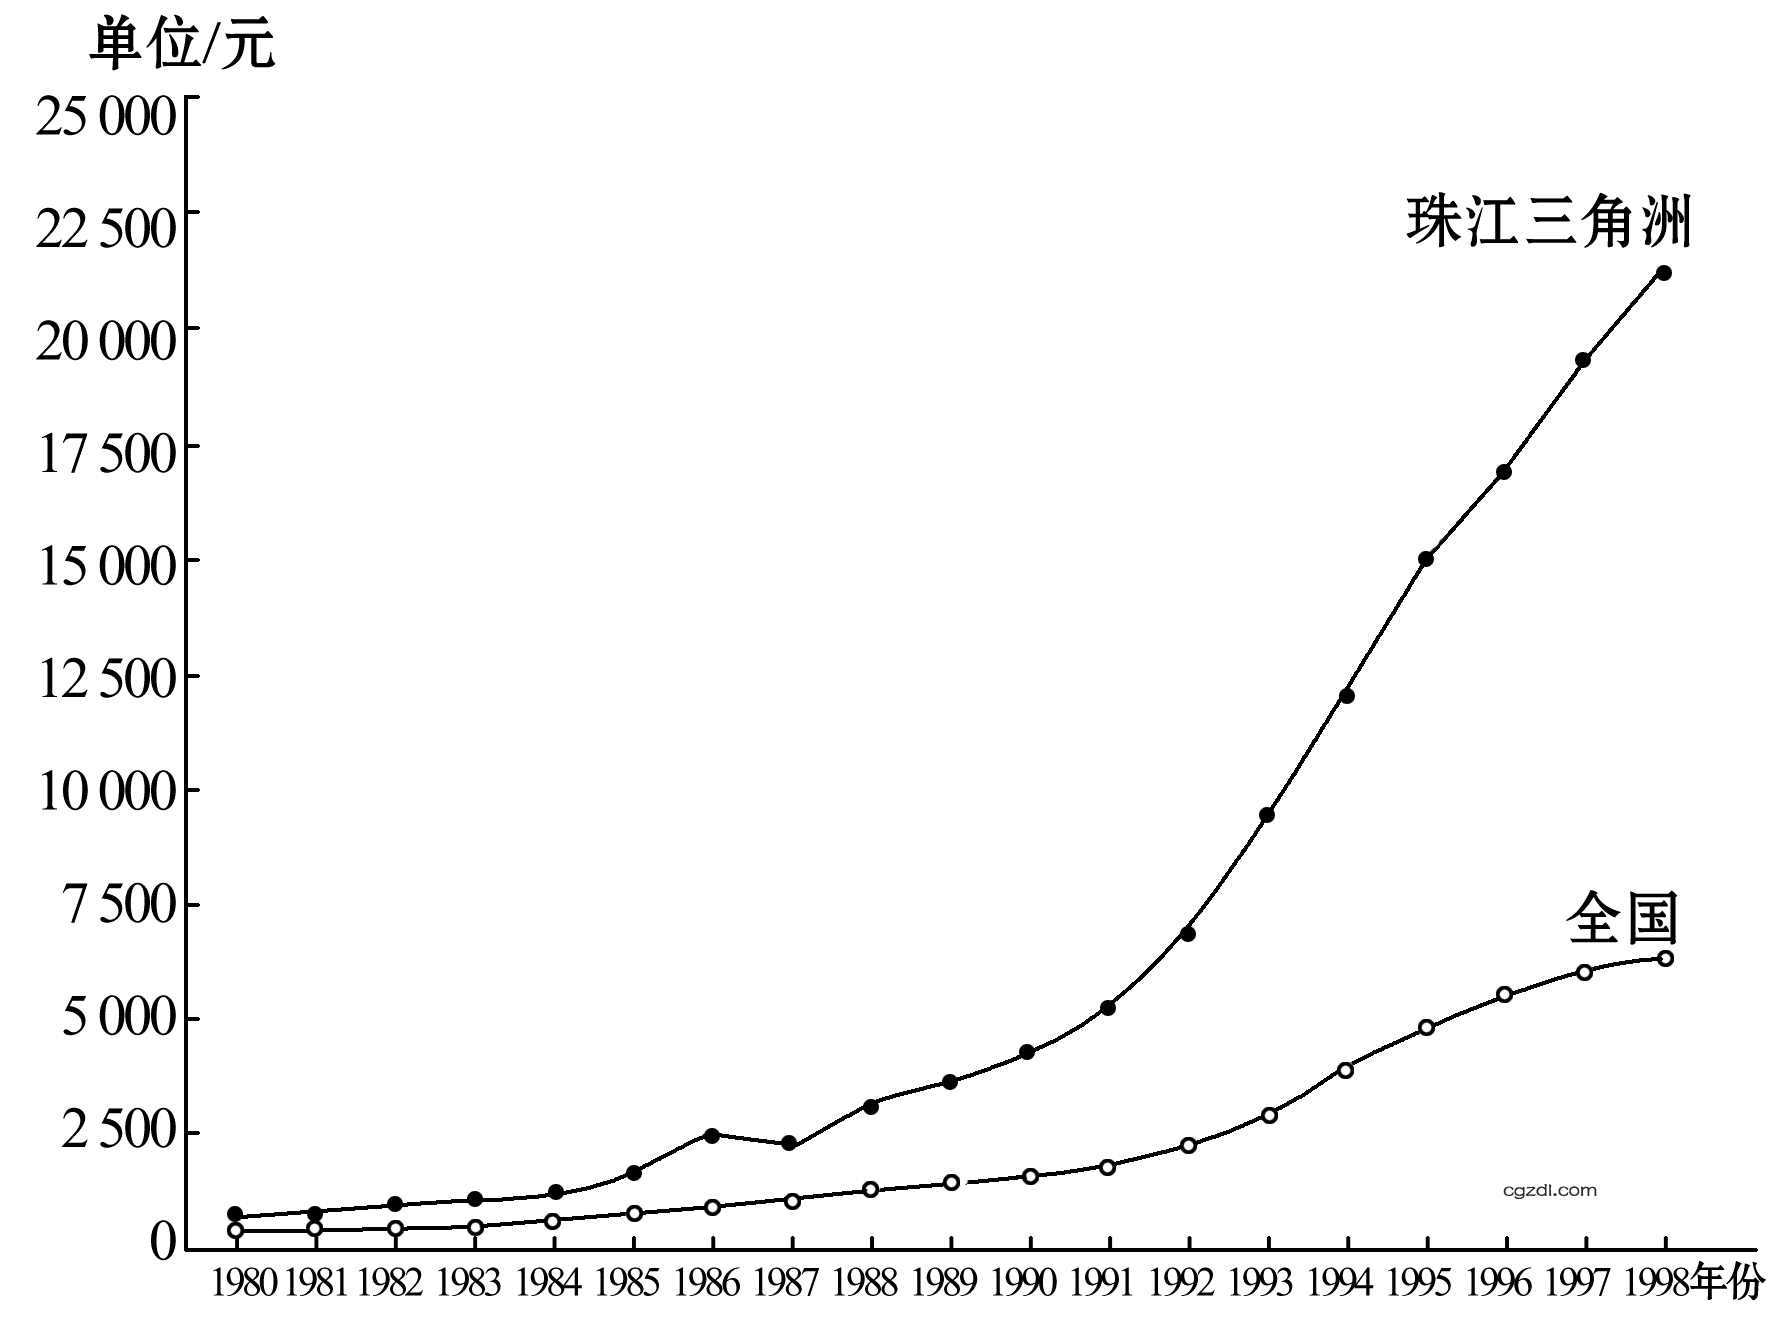 珠江三角洲和全国人均GDP增长曲线图